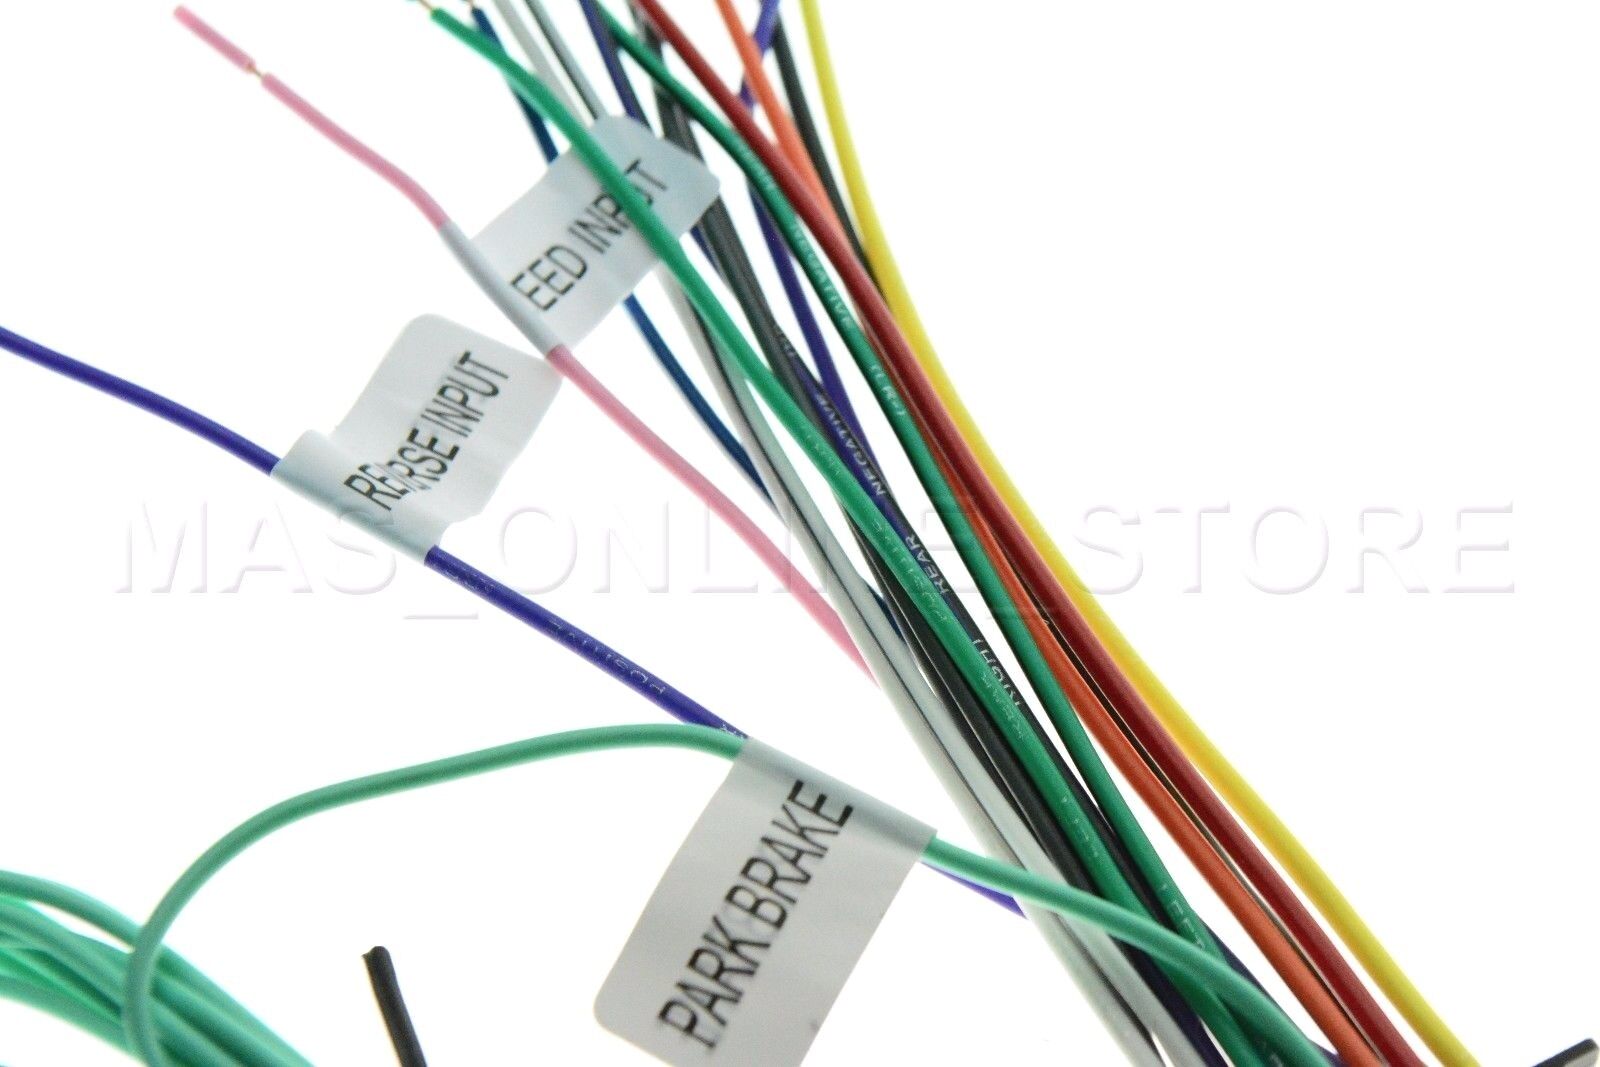 ddx574bh wiring diagram